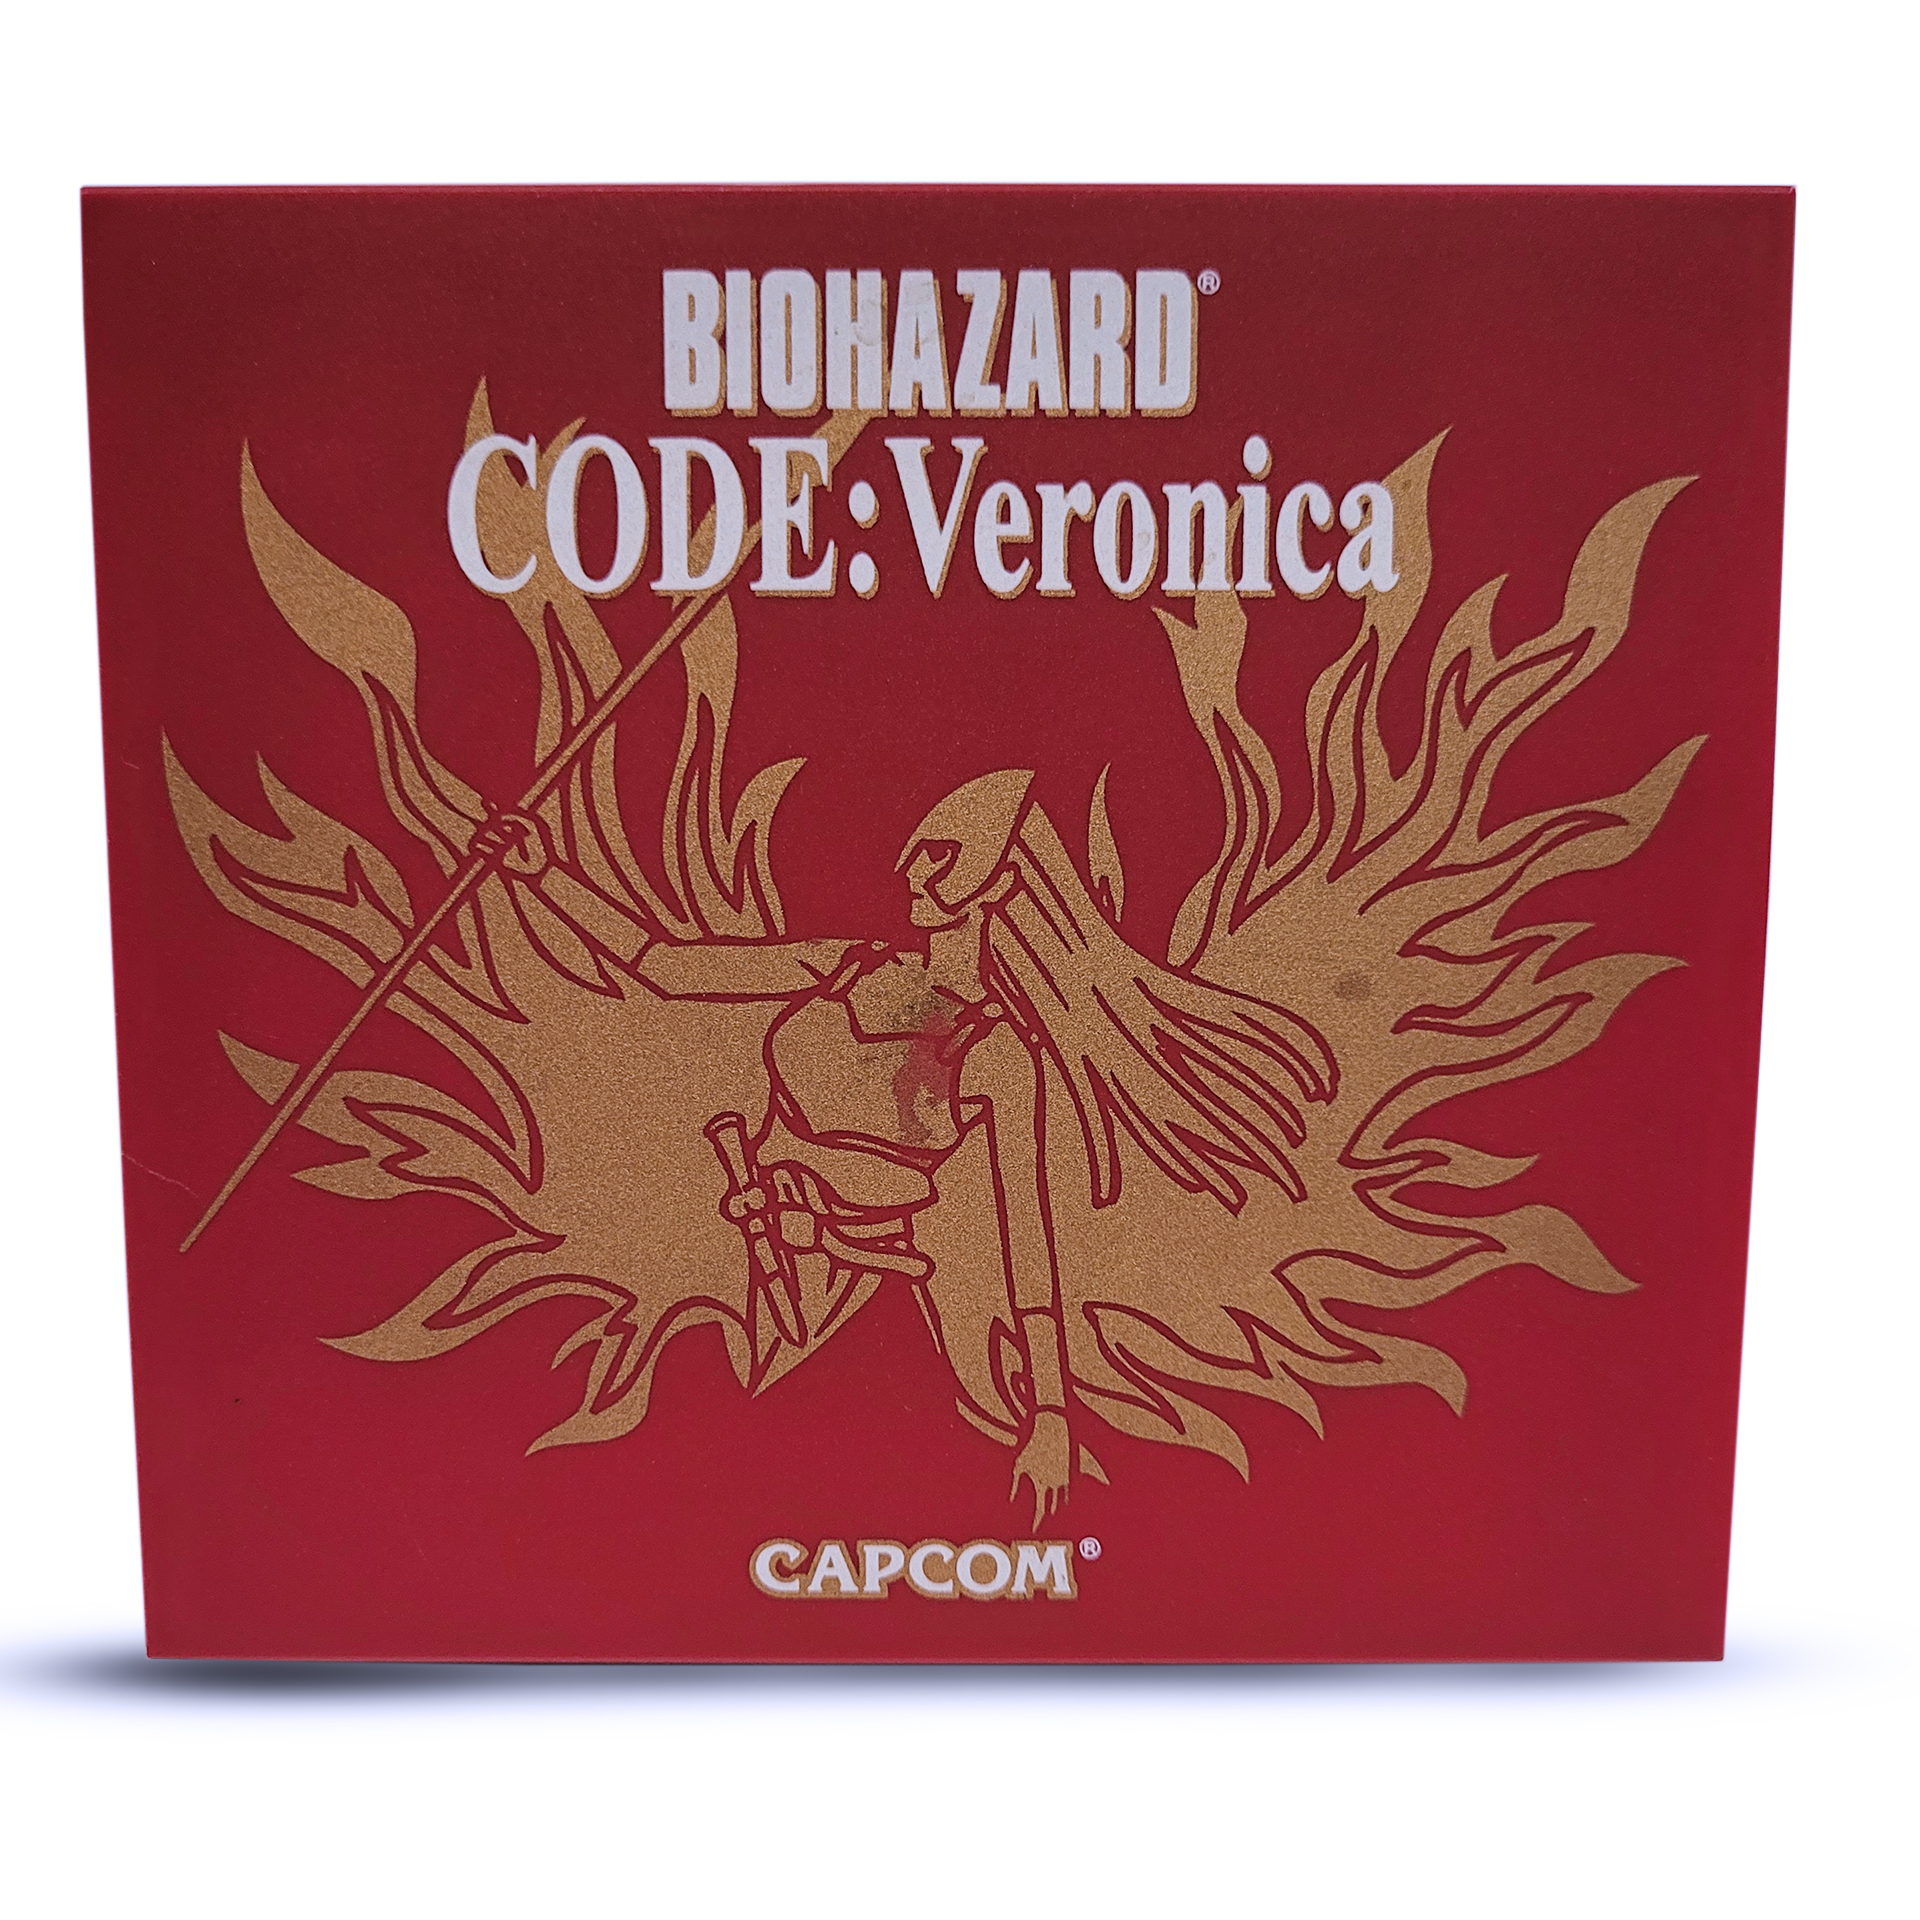 Resident evil code: veronica (2discos) para sega dreamcast